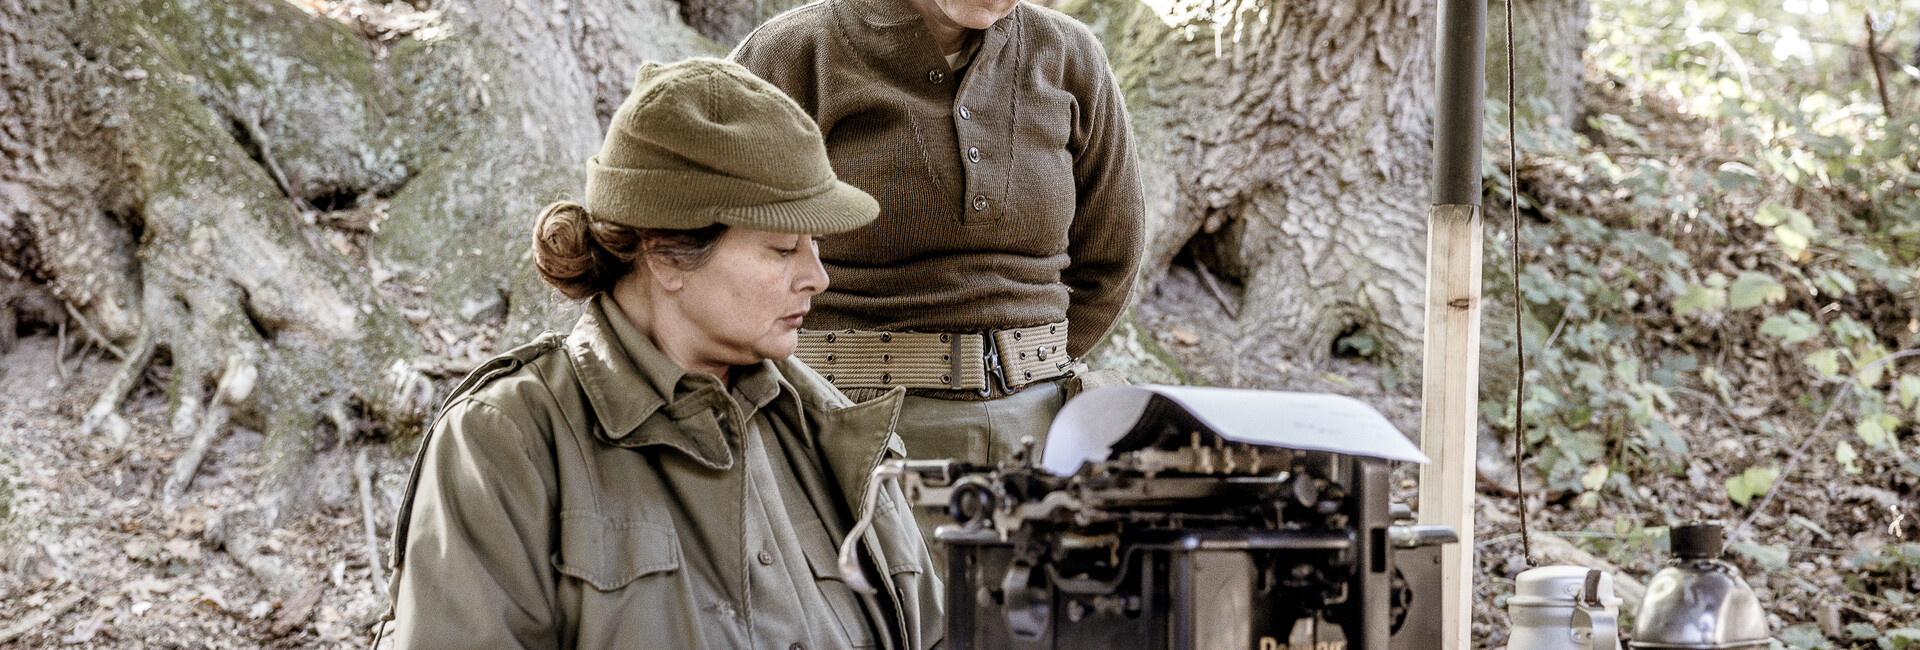 oorlogsmuseum - 30 maart - Levende displays van vrouwen achter het front